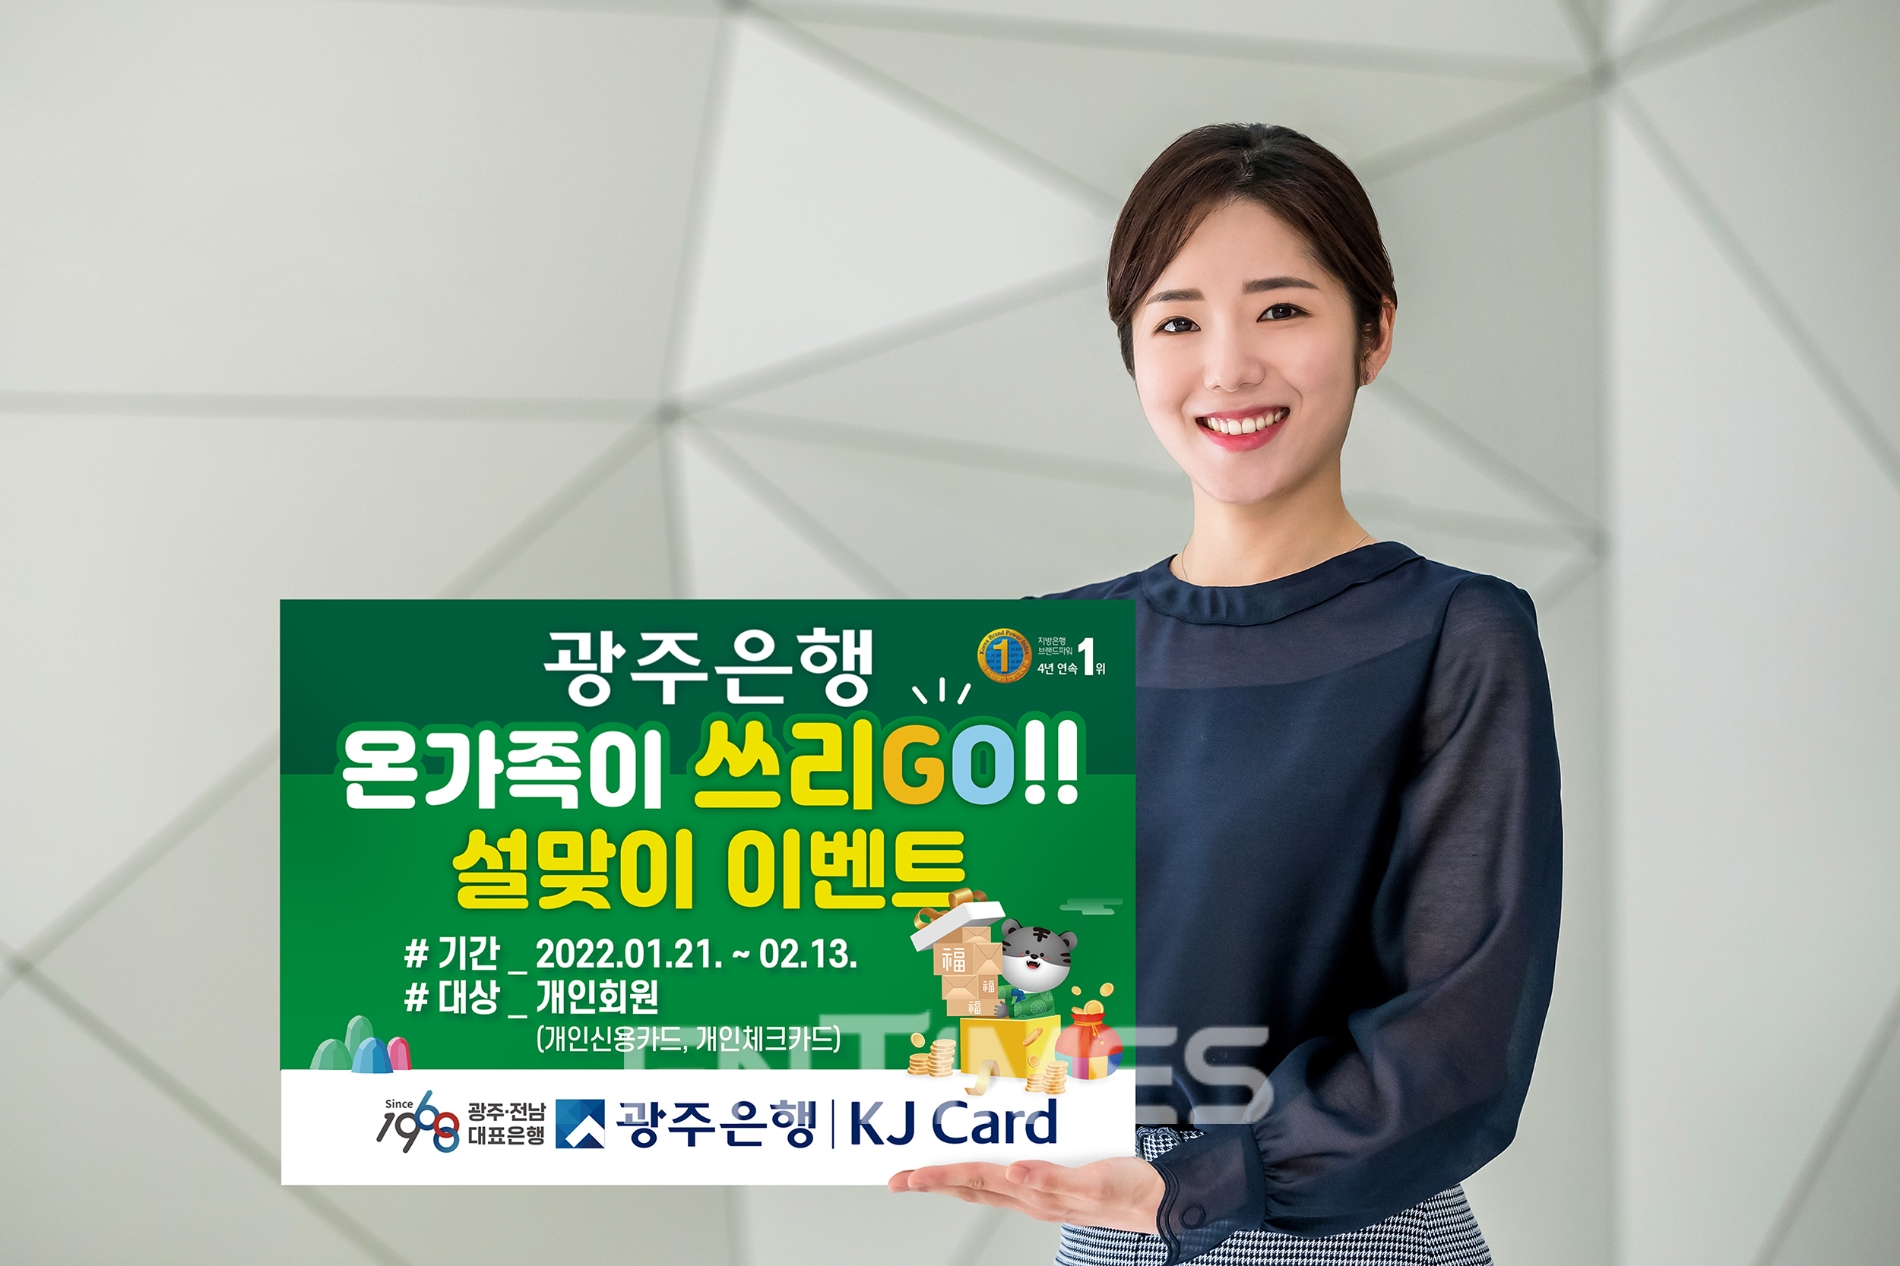 광주은행(은행장 송종욱)은 KJ카드 개인고객을 대상으로 다음 달 13일까지 ‘온 가족이 쓰리 고(Go)’ 설맞이 이벤트를 실시한다./사진=광주은행